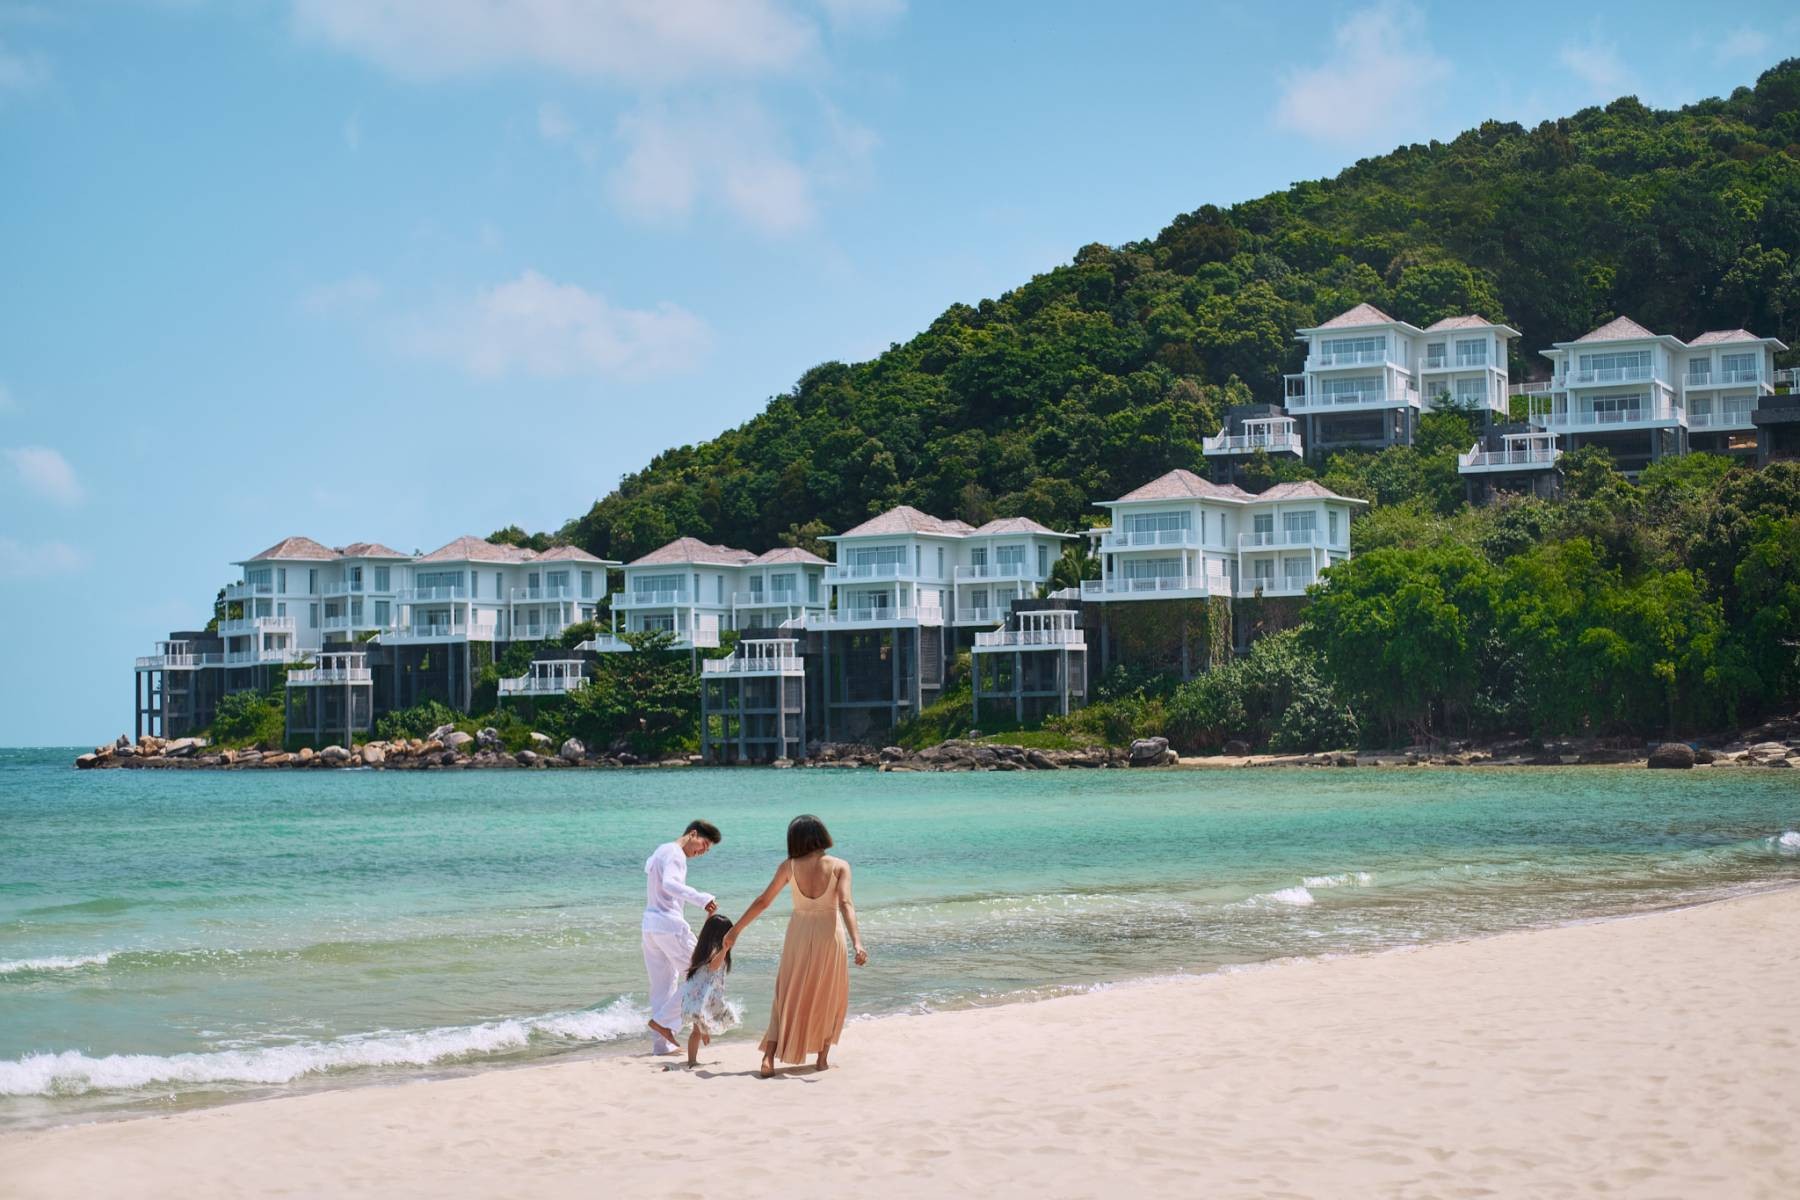 Du lịch Phú Quốc đảo nghỉ dưỡng nổi tiếng được ca ngợi